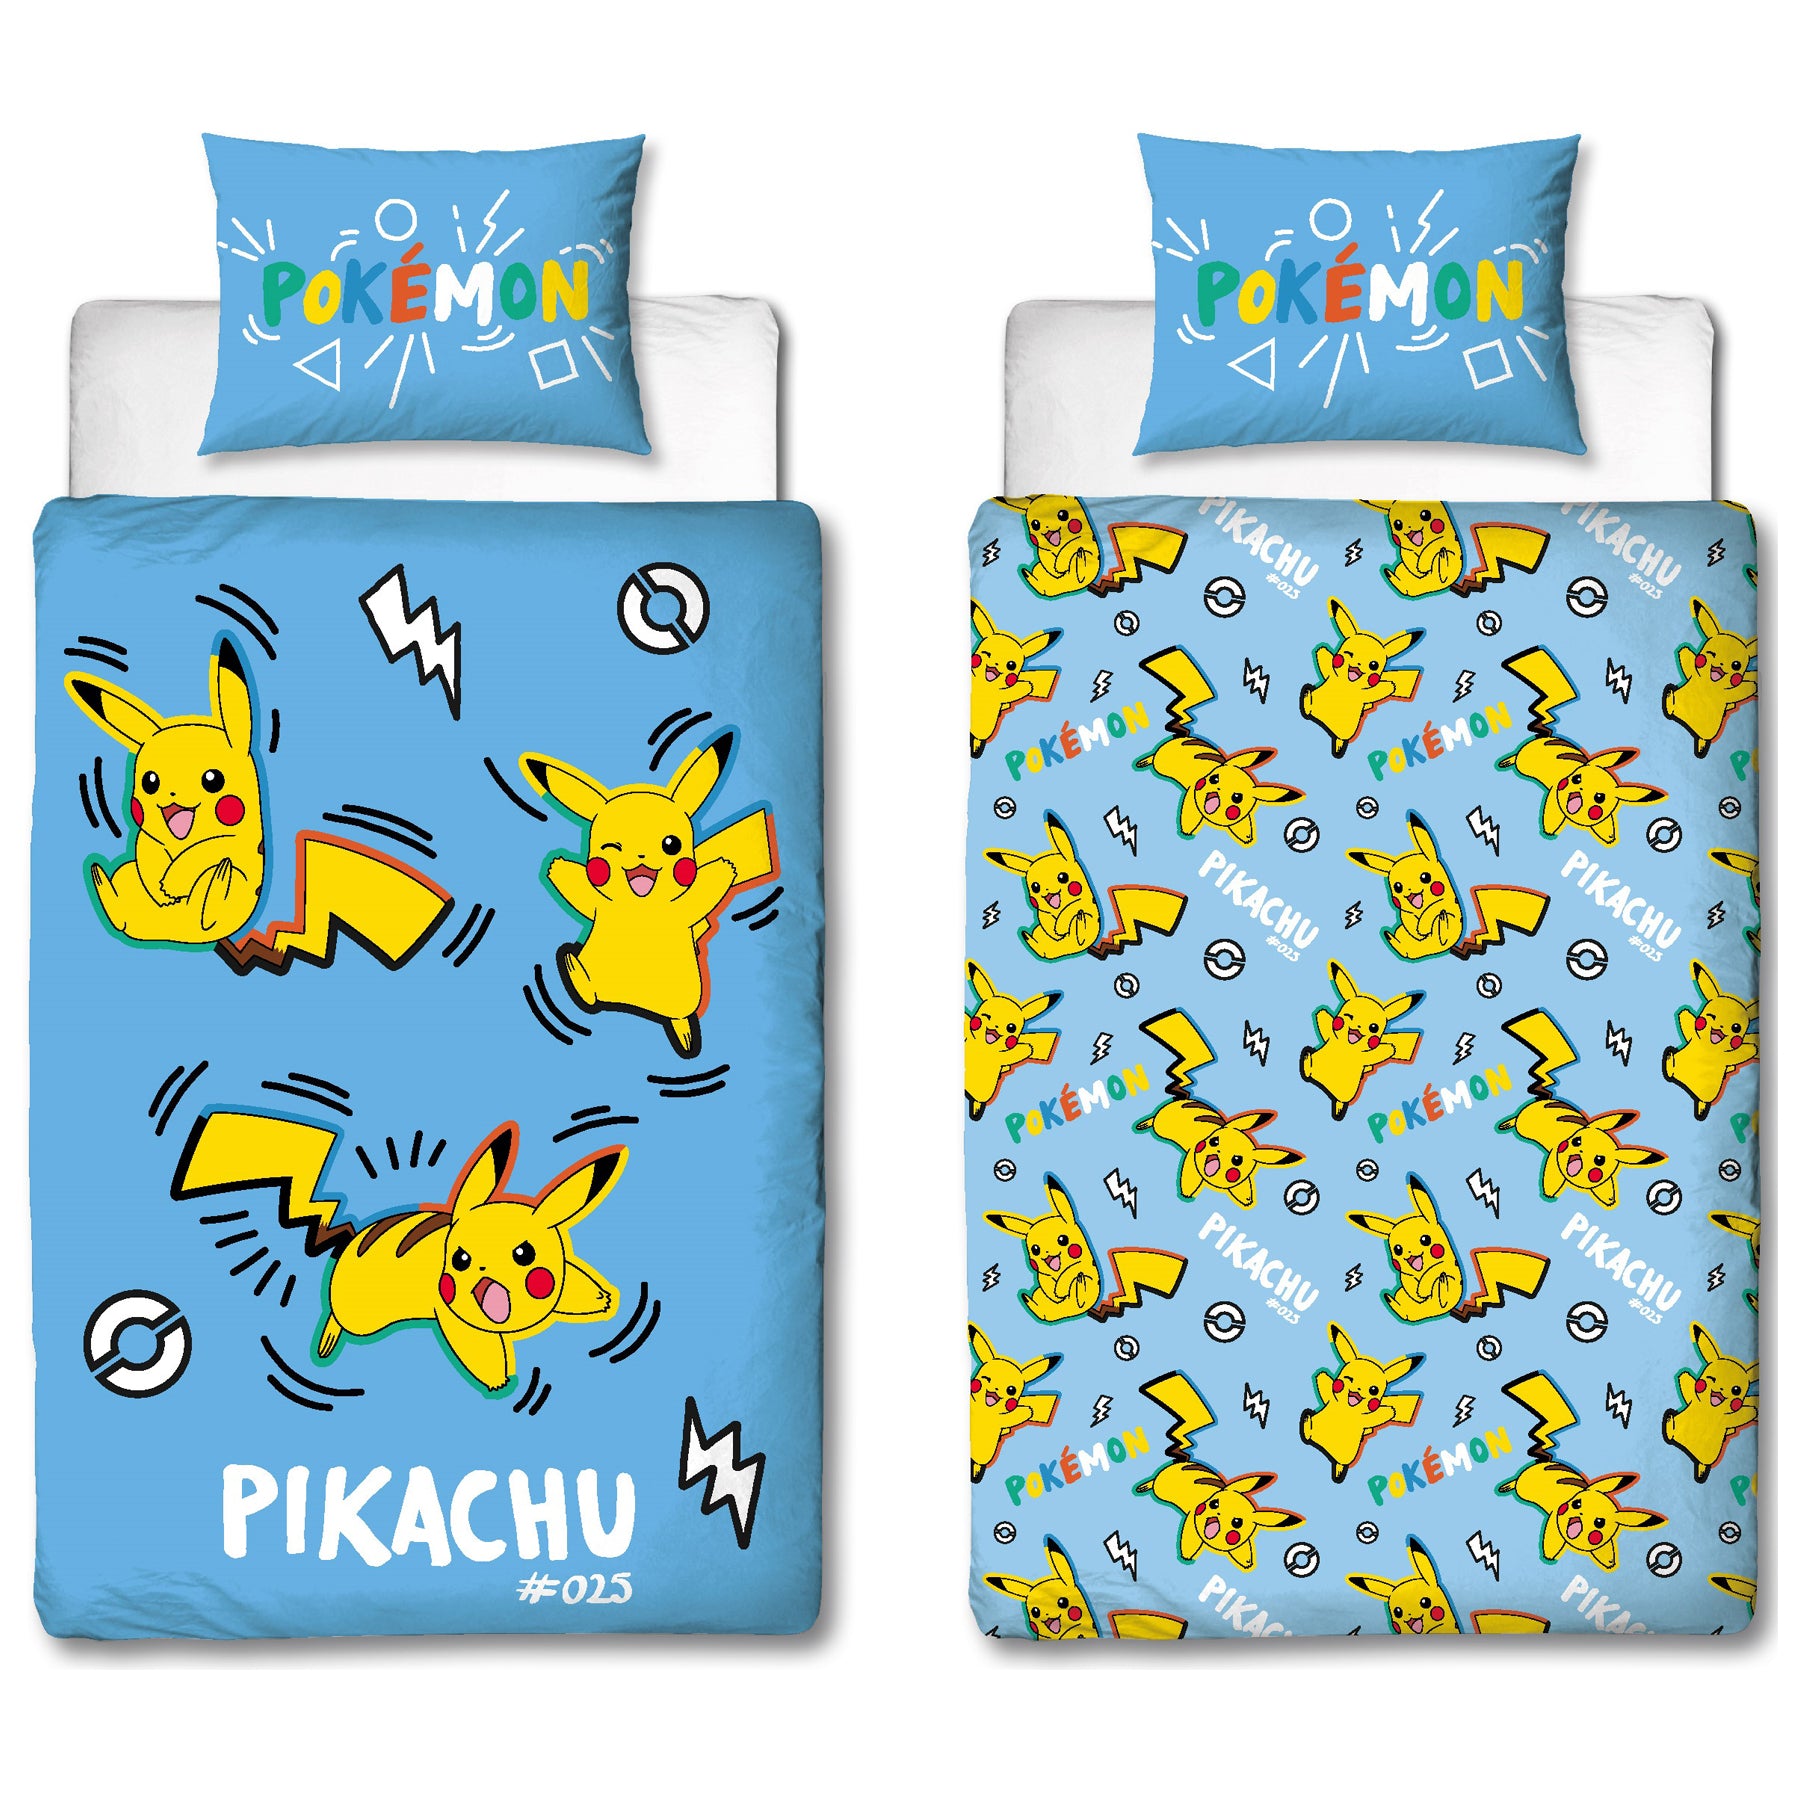 Pokemon vendebar sengetøj med pikachu og lyn.